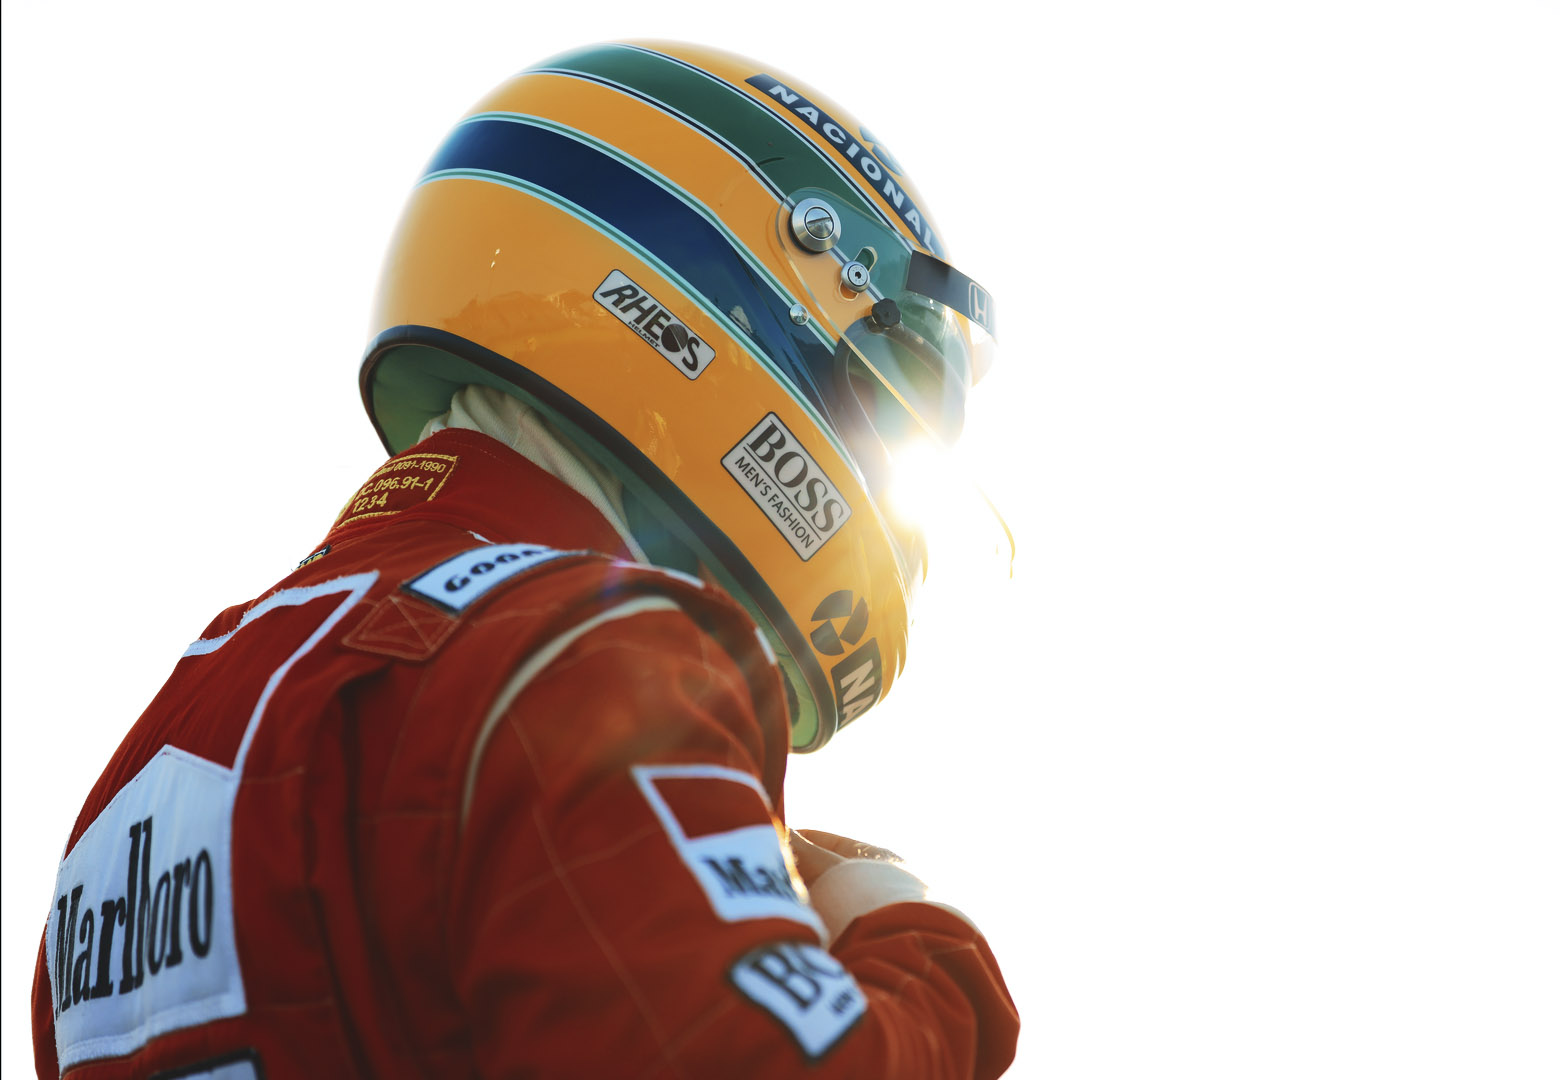           Senna: Netflix divulga trailer oficial da série sobre lendário piloto de Fórmula 1          